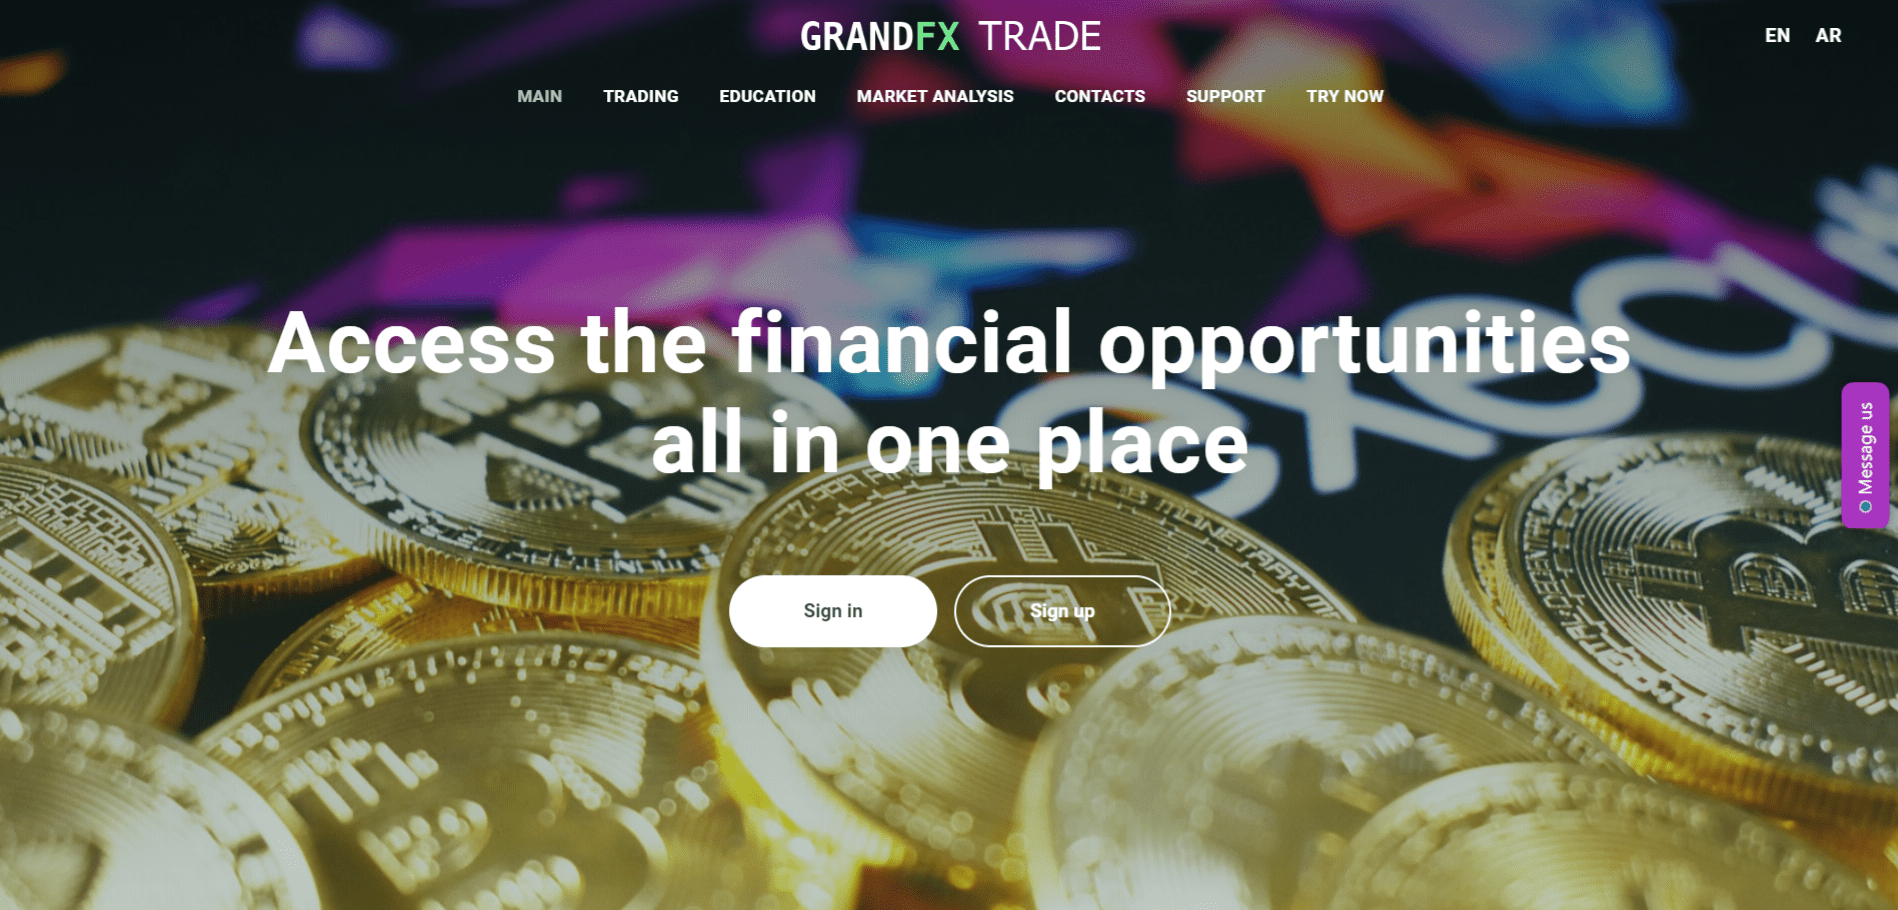 GrandFX Trade scam